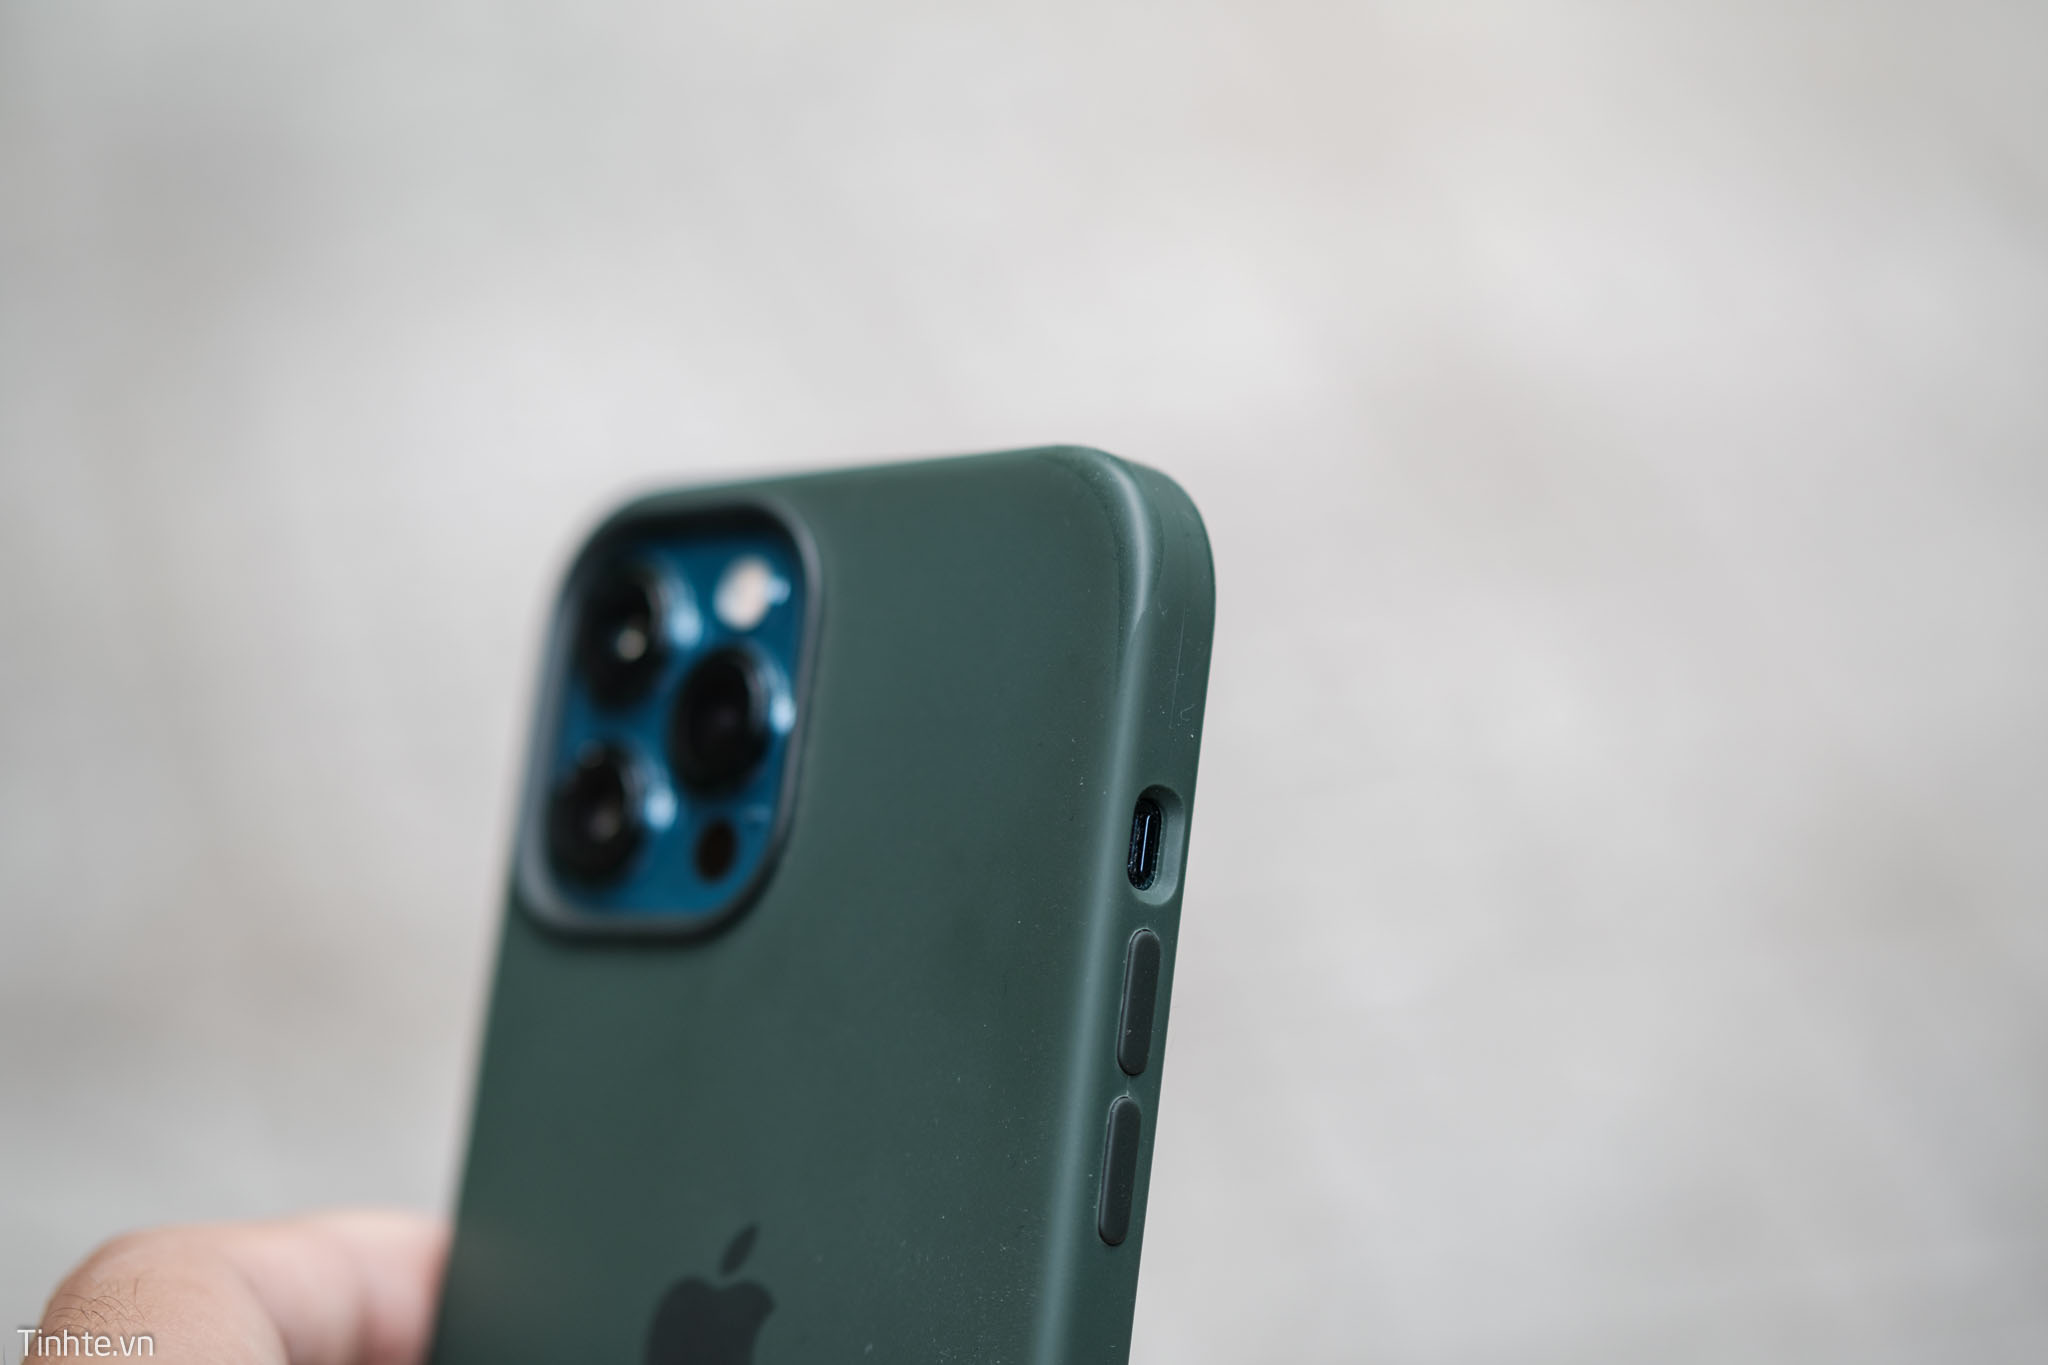 Review ốp lưng silicone Apple dành cho iPhone 12 Pro Max: không xịn như mong đợi